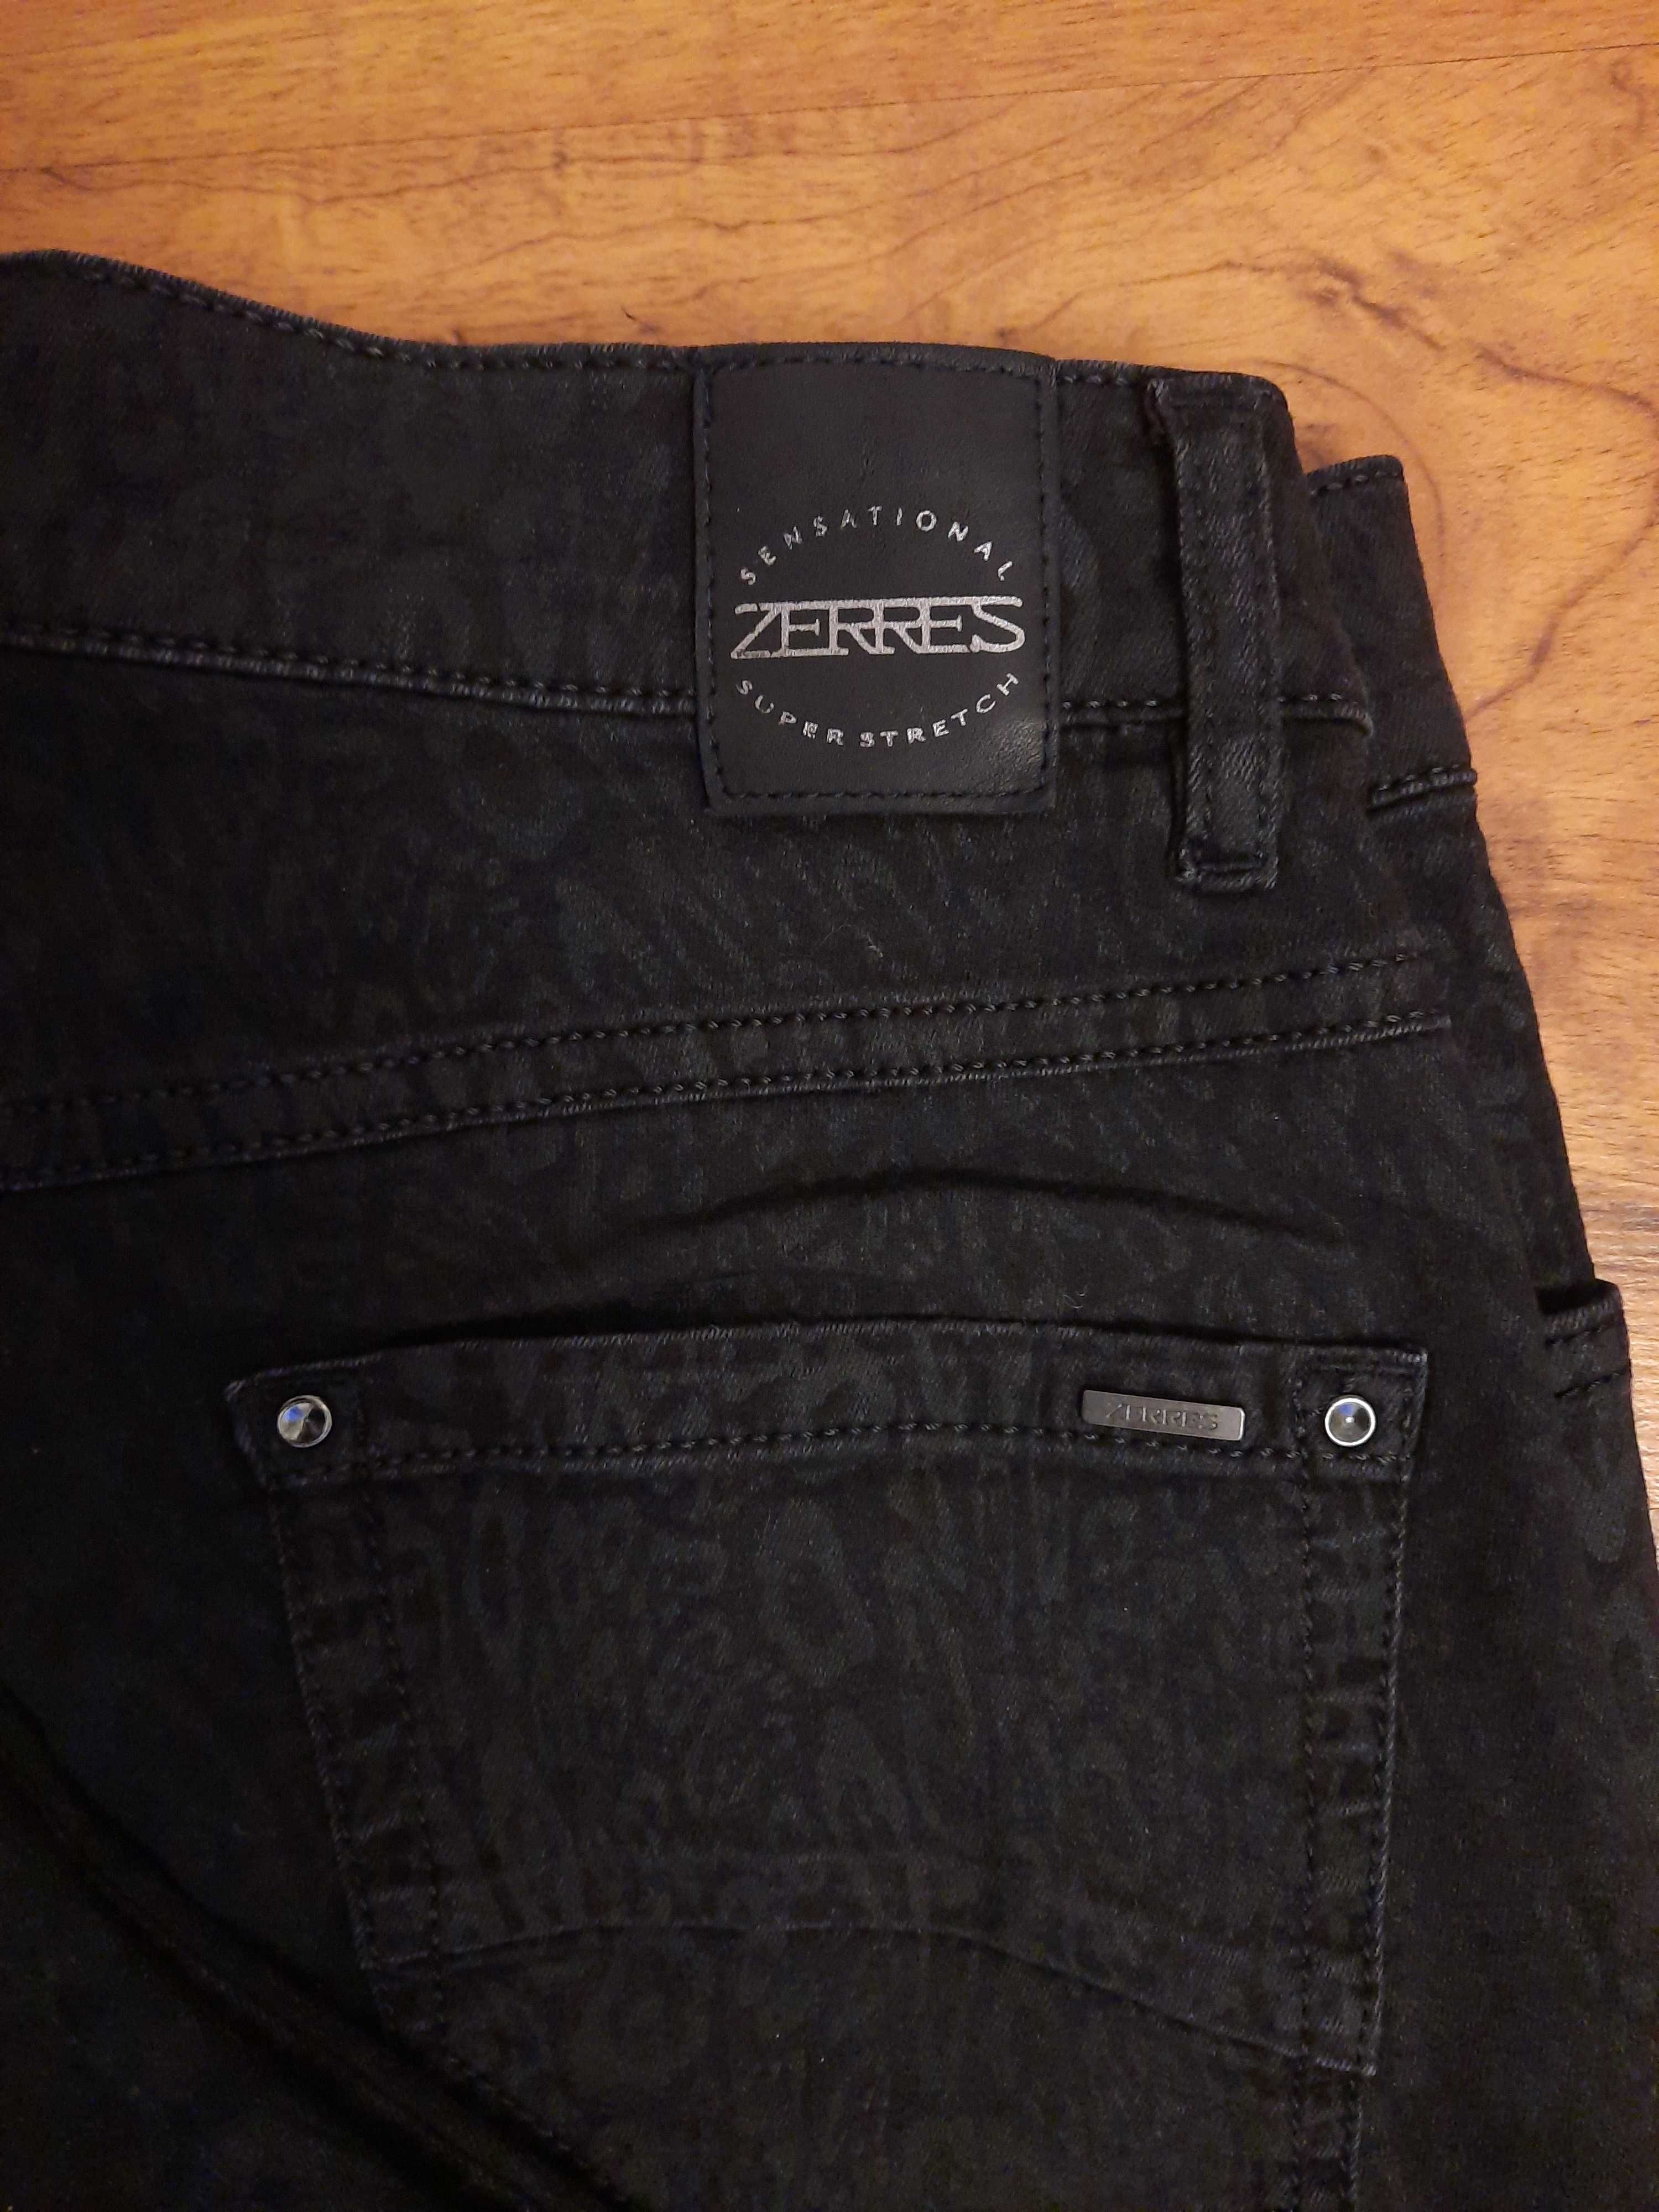 Czarne spodnie jeansowe jeansy ze wzorkami Sensational by Zerres 36